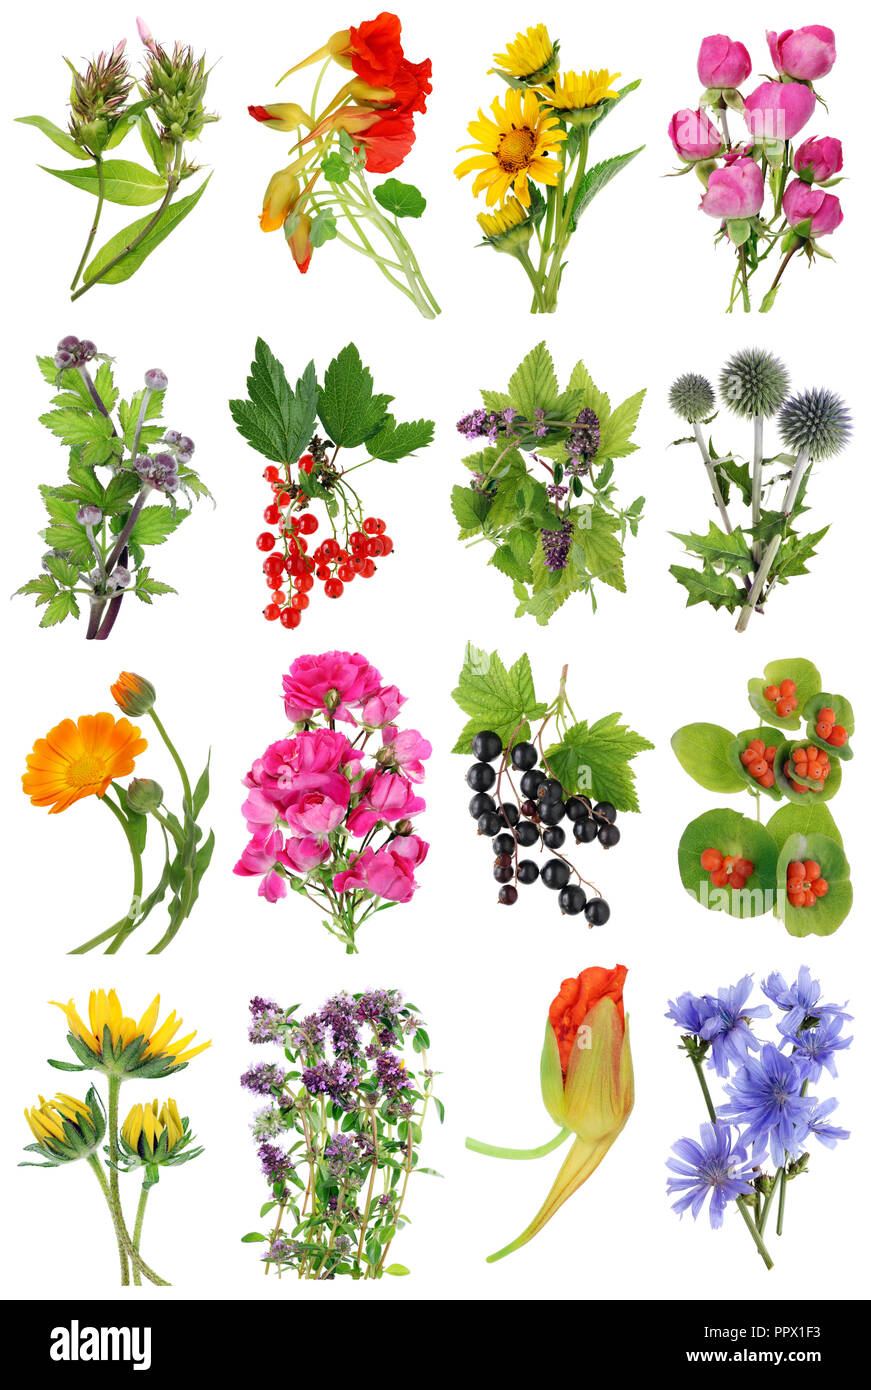 Juli Sommer europäische Pflanzen und Blumen. Auf weissem studio  Makroaufnahmen isoliert. Bilder in voller Größe finden sie in meinem  Portfolio Stockfotografie - Alamy